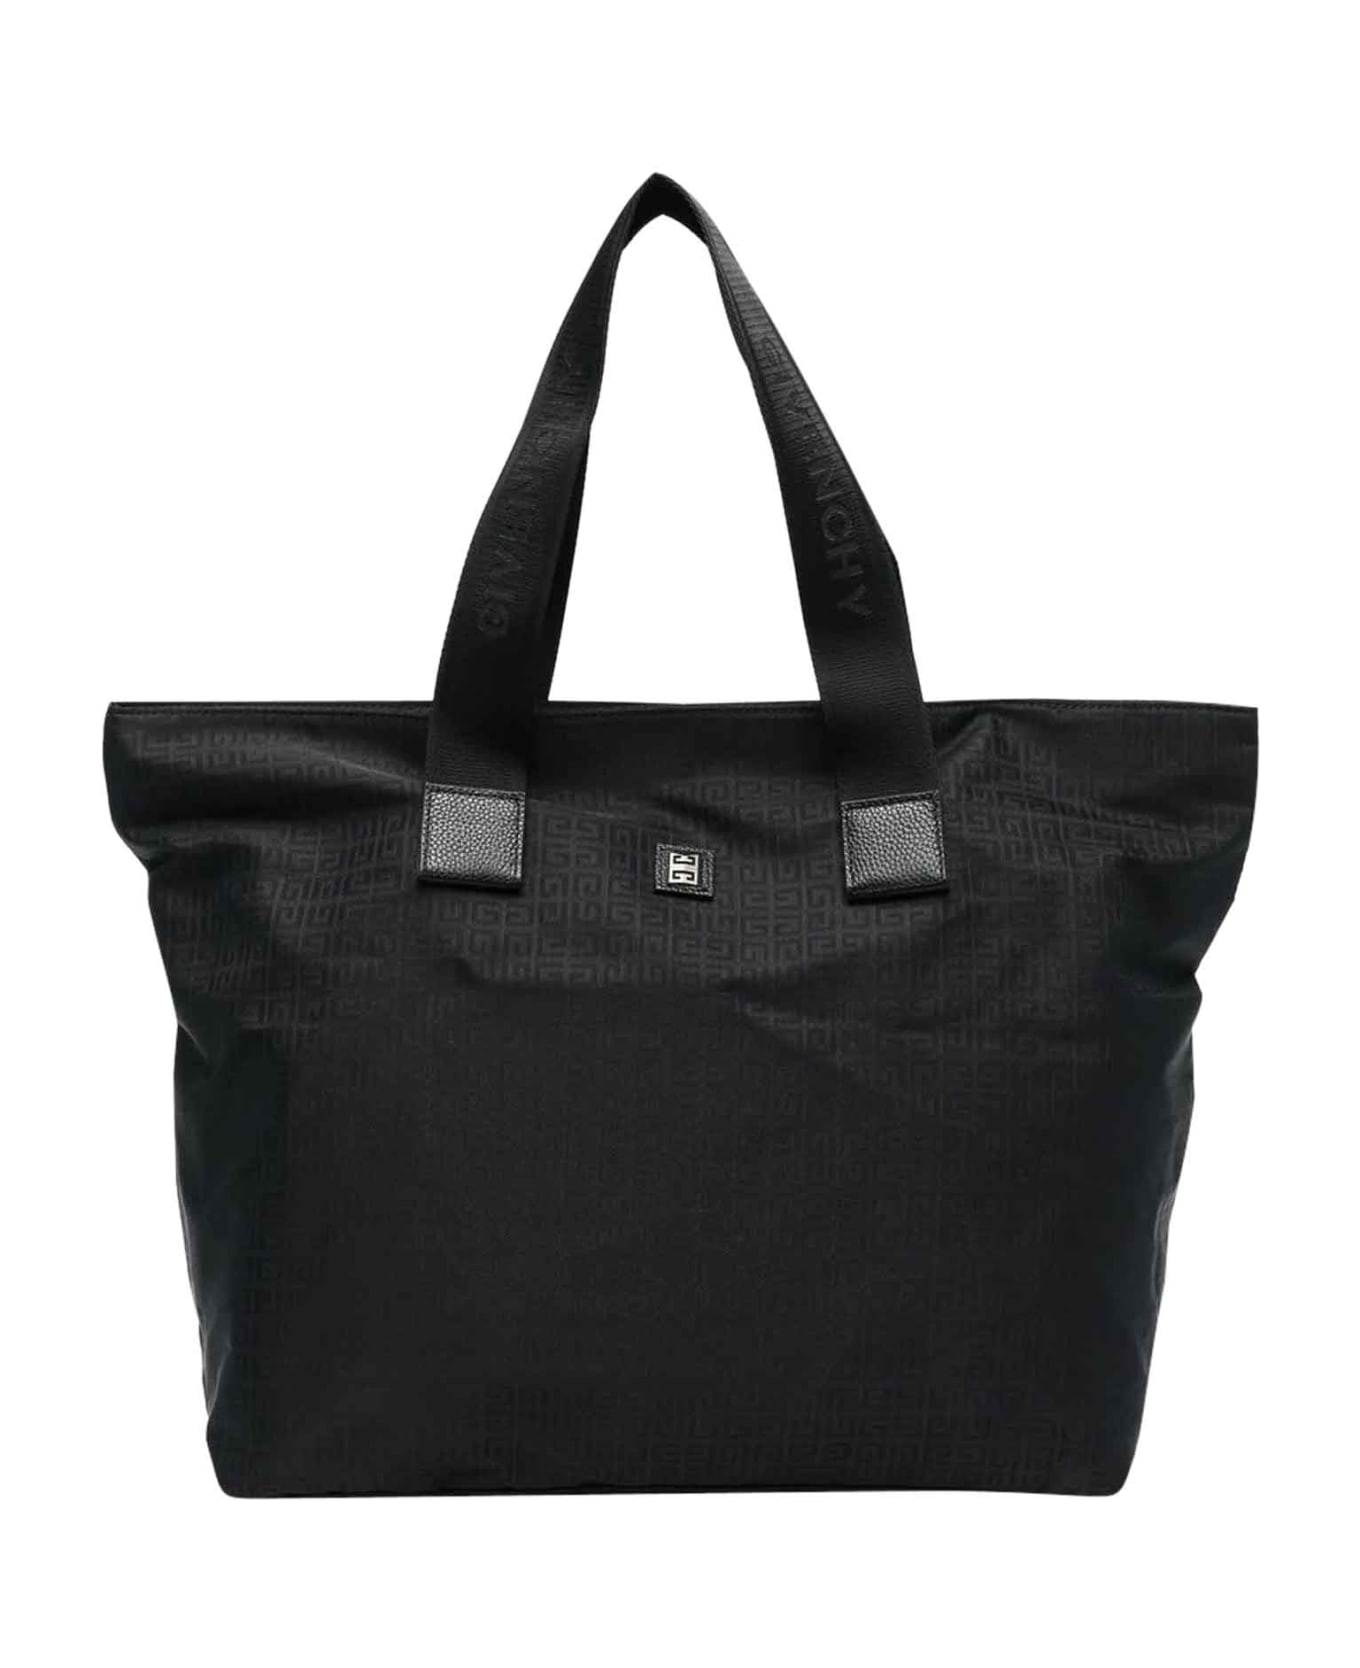 Givenchy Black Bag Unisex - Nero